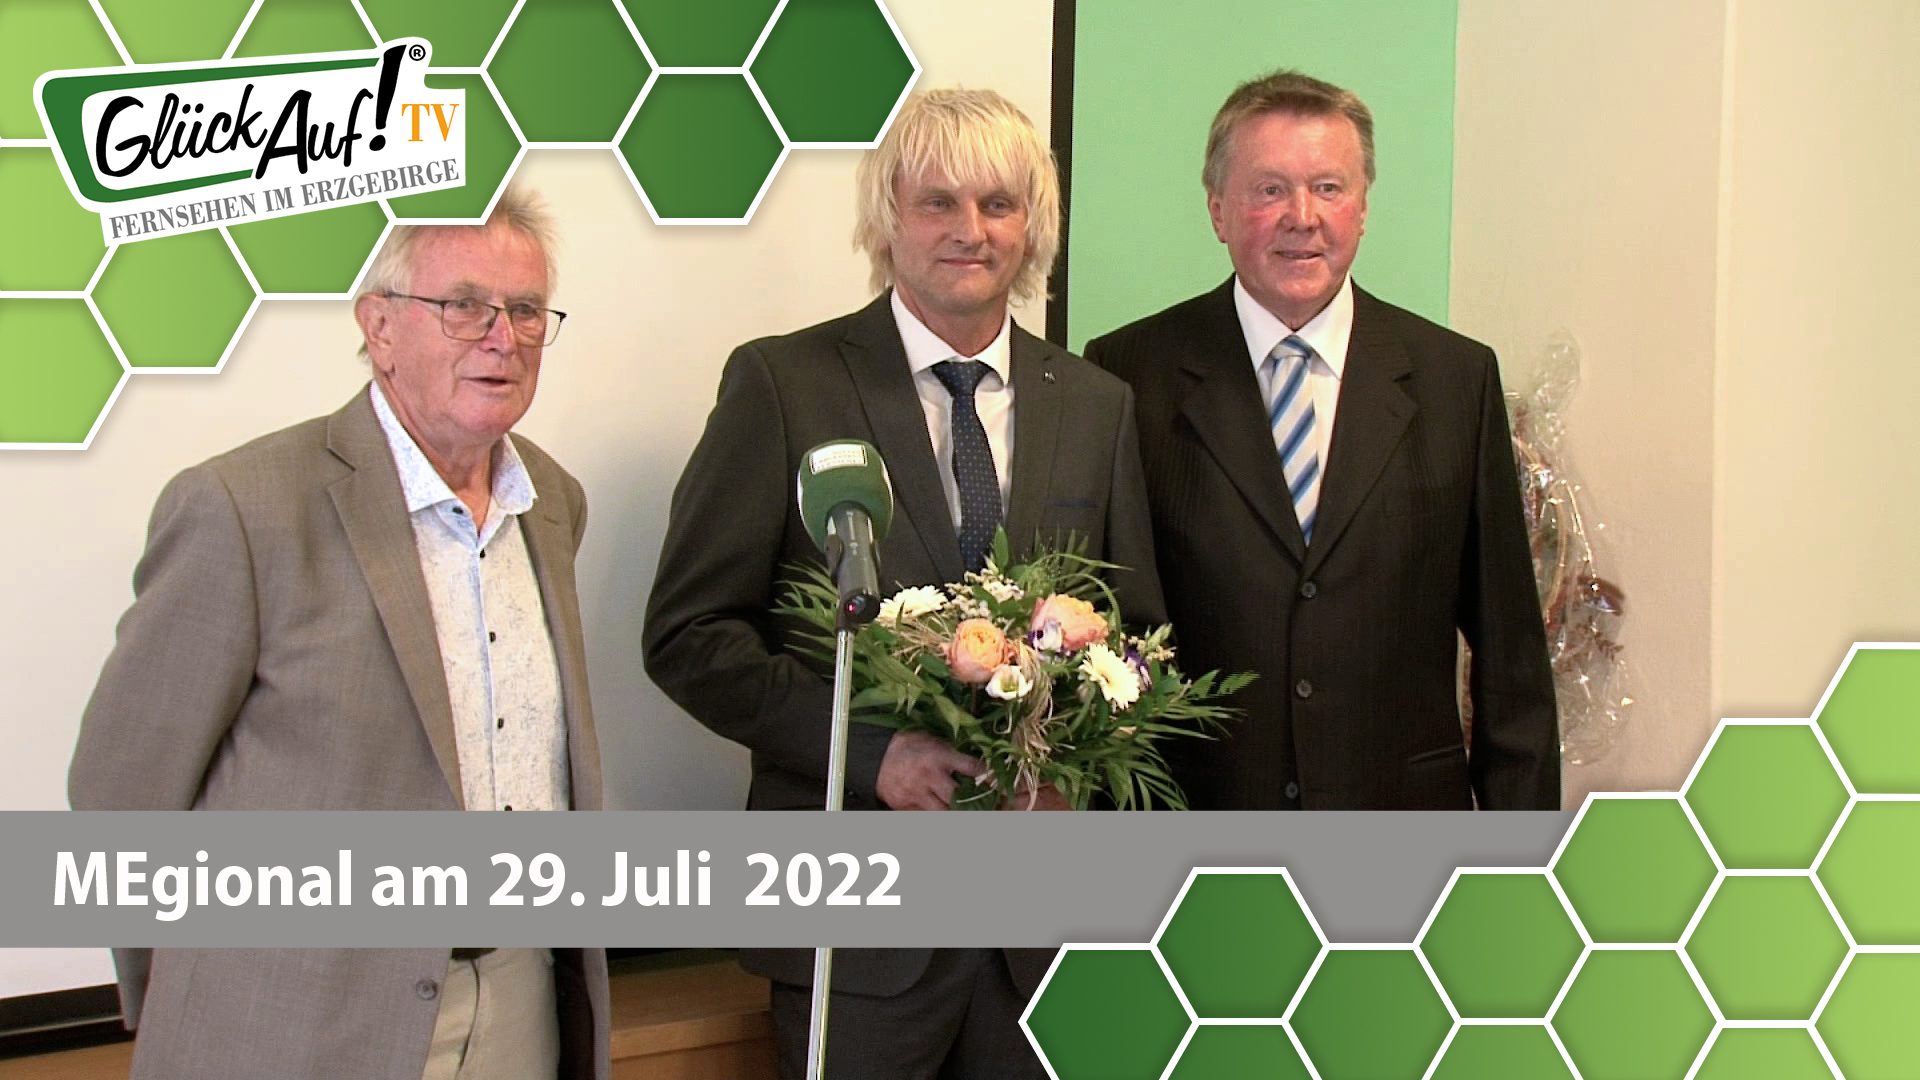 MEgional am 29. Juli 2022 - mit einer Amtsübergabe im Olbernhauer Rathaus